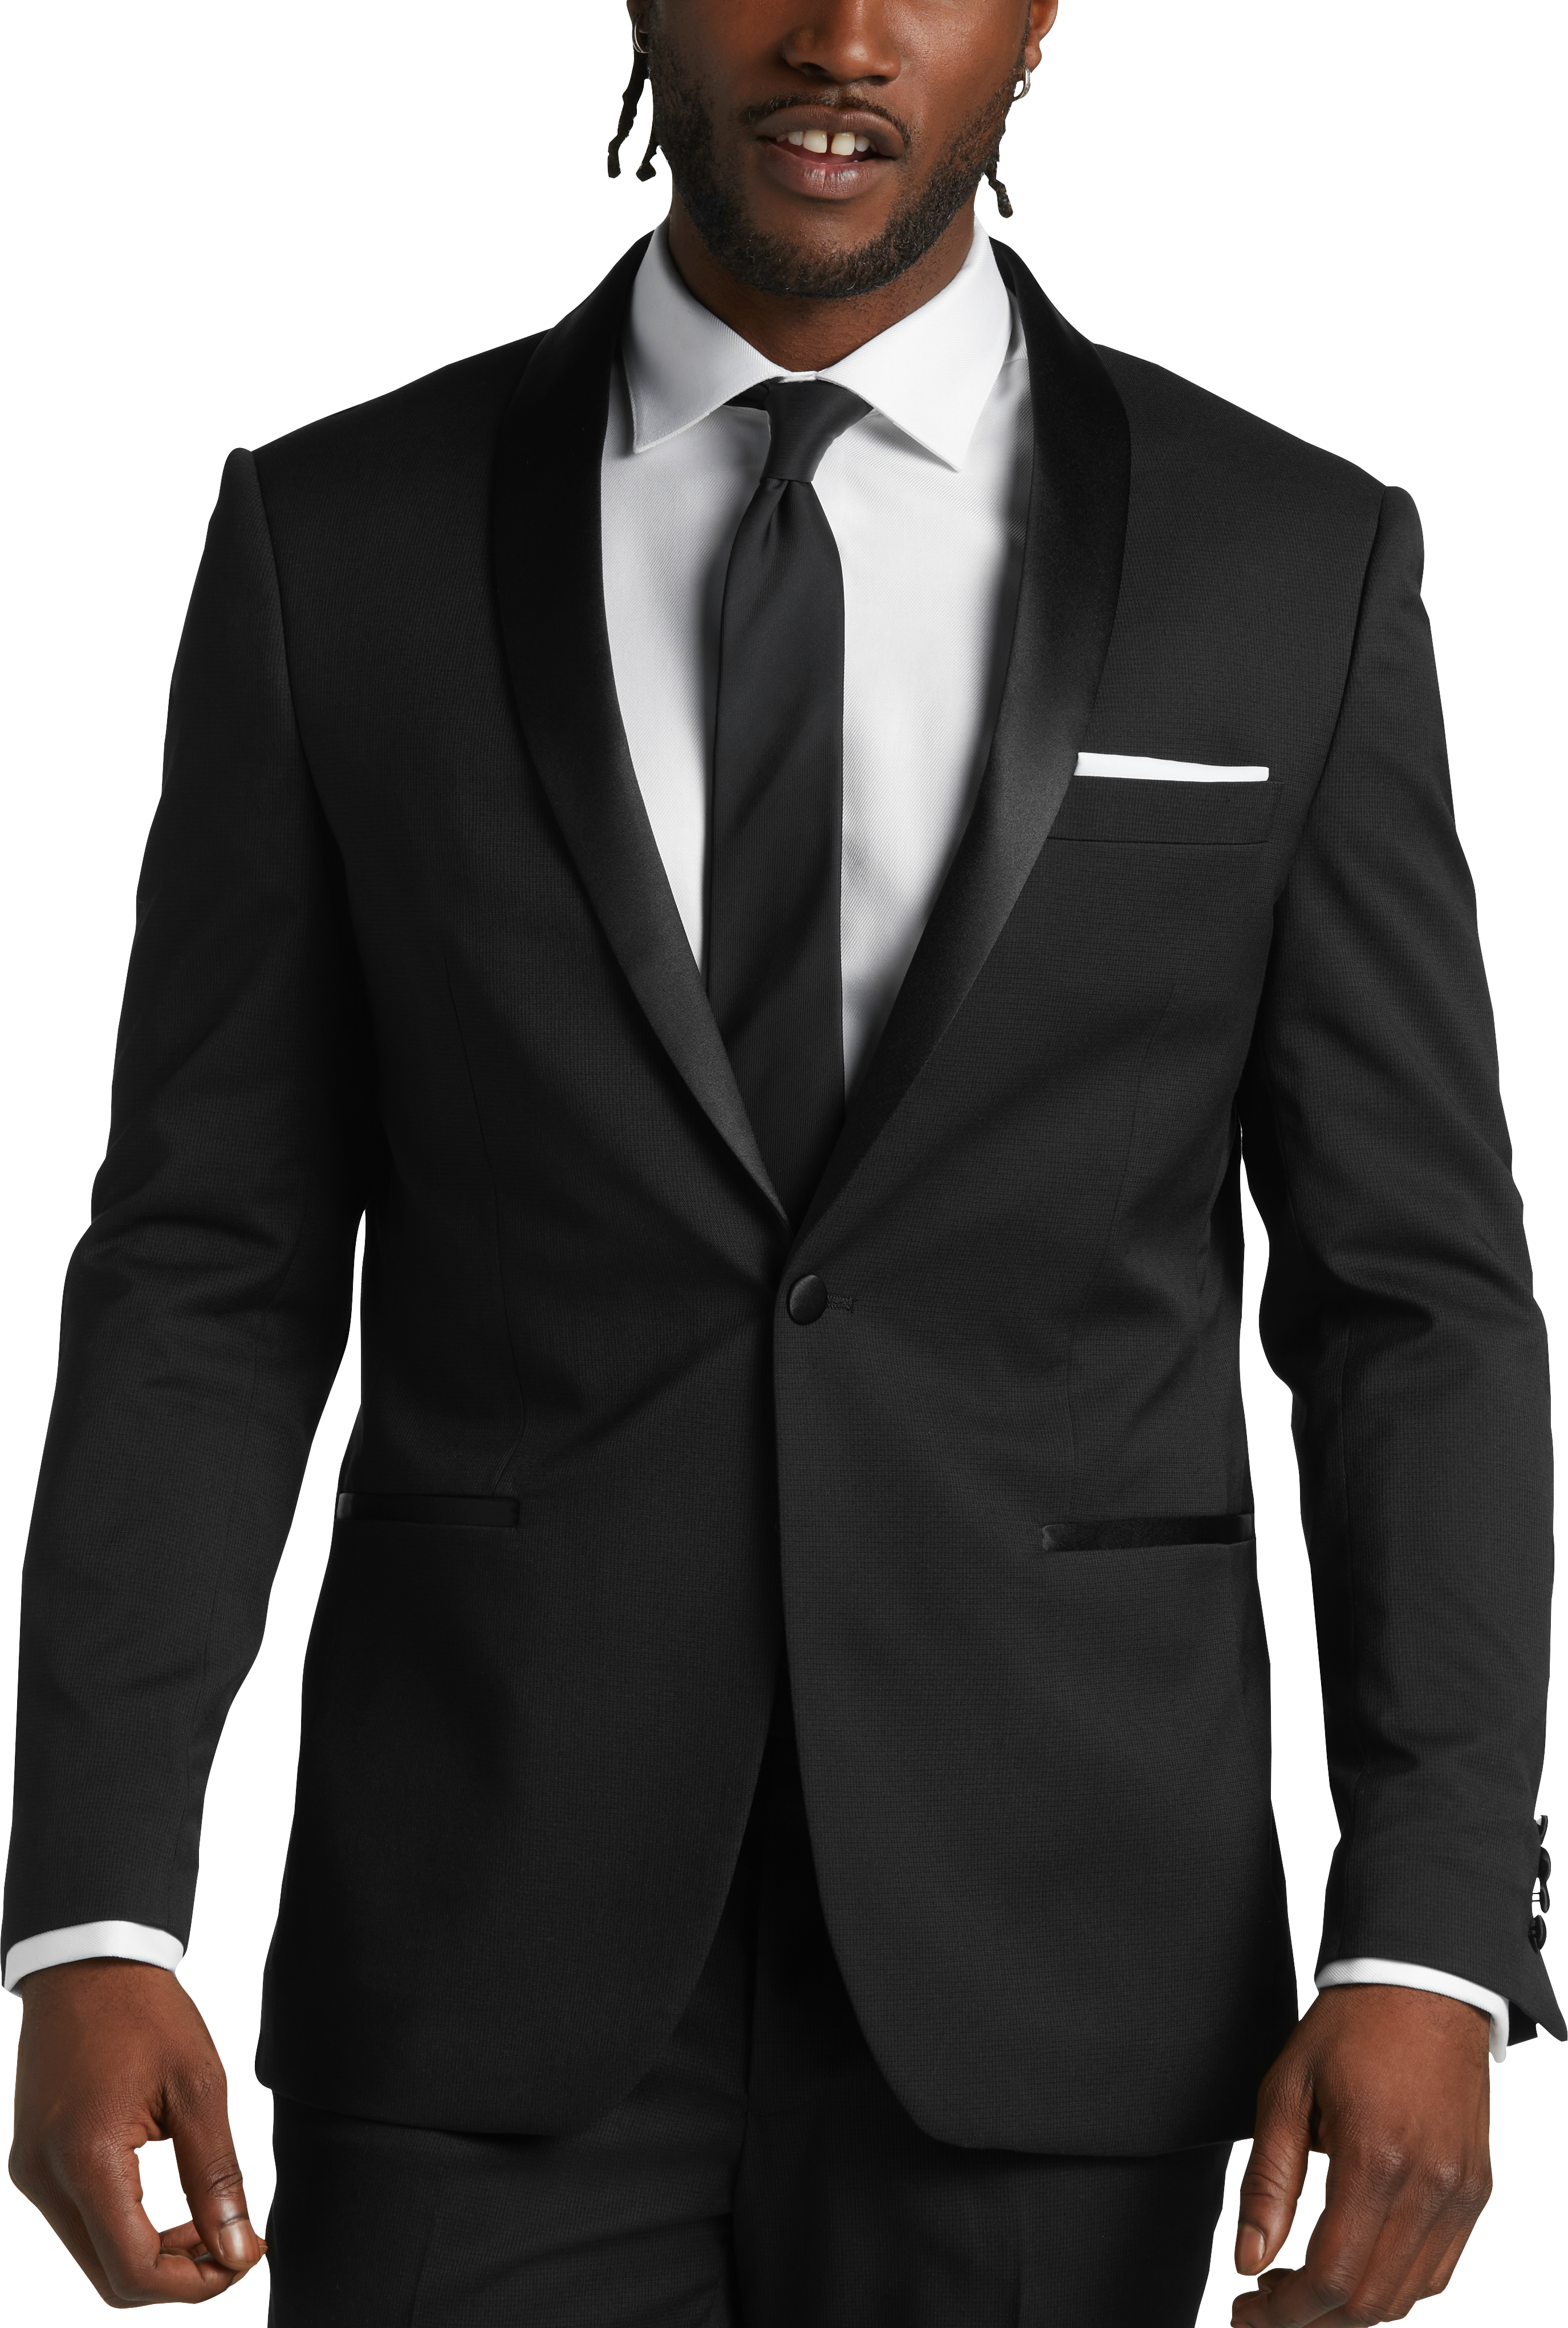 Men'S Tuxedo & Black Tie Tuxes - Shop Formal Suits | Men'S Wearhouse